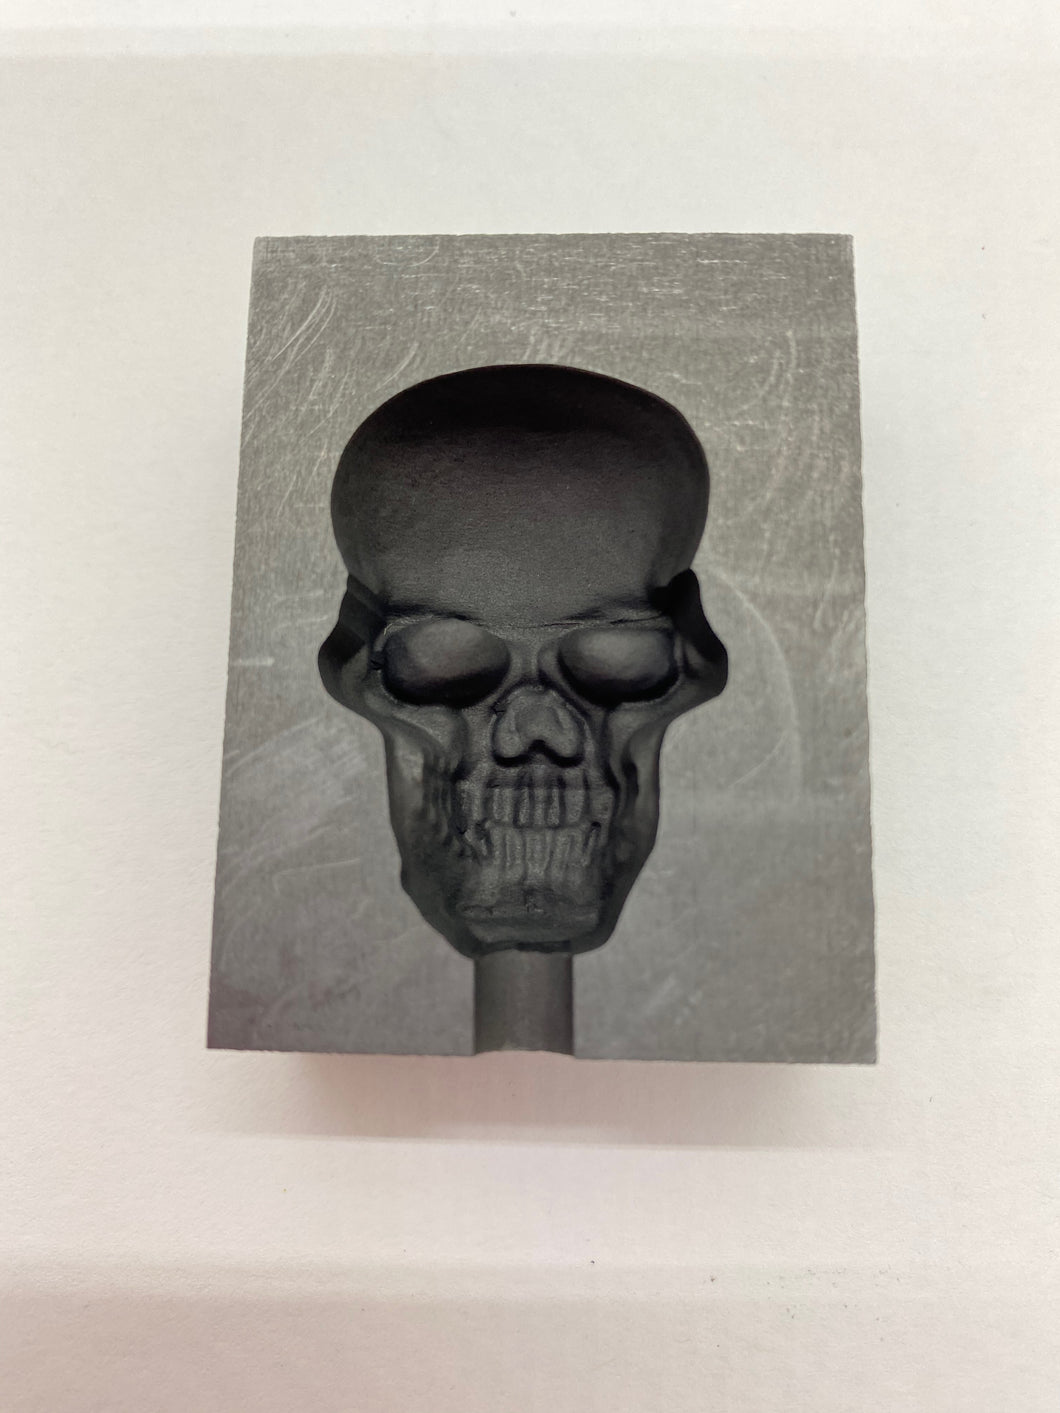 Skull Mold – Blast Shield